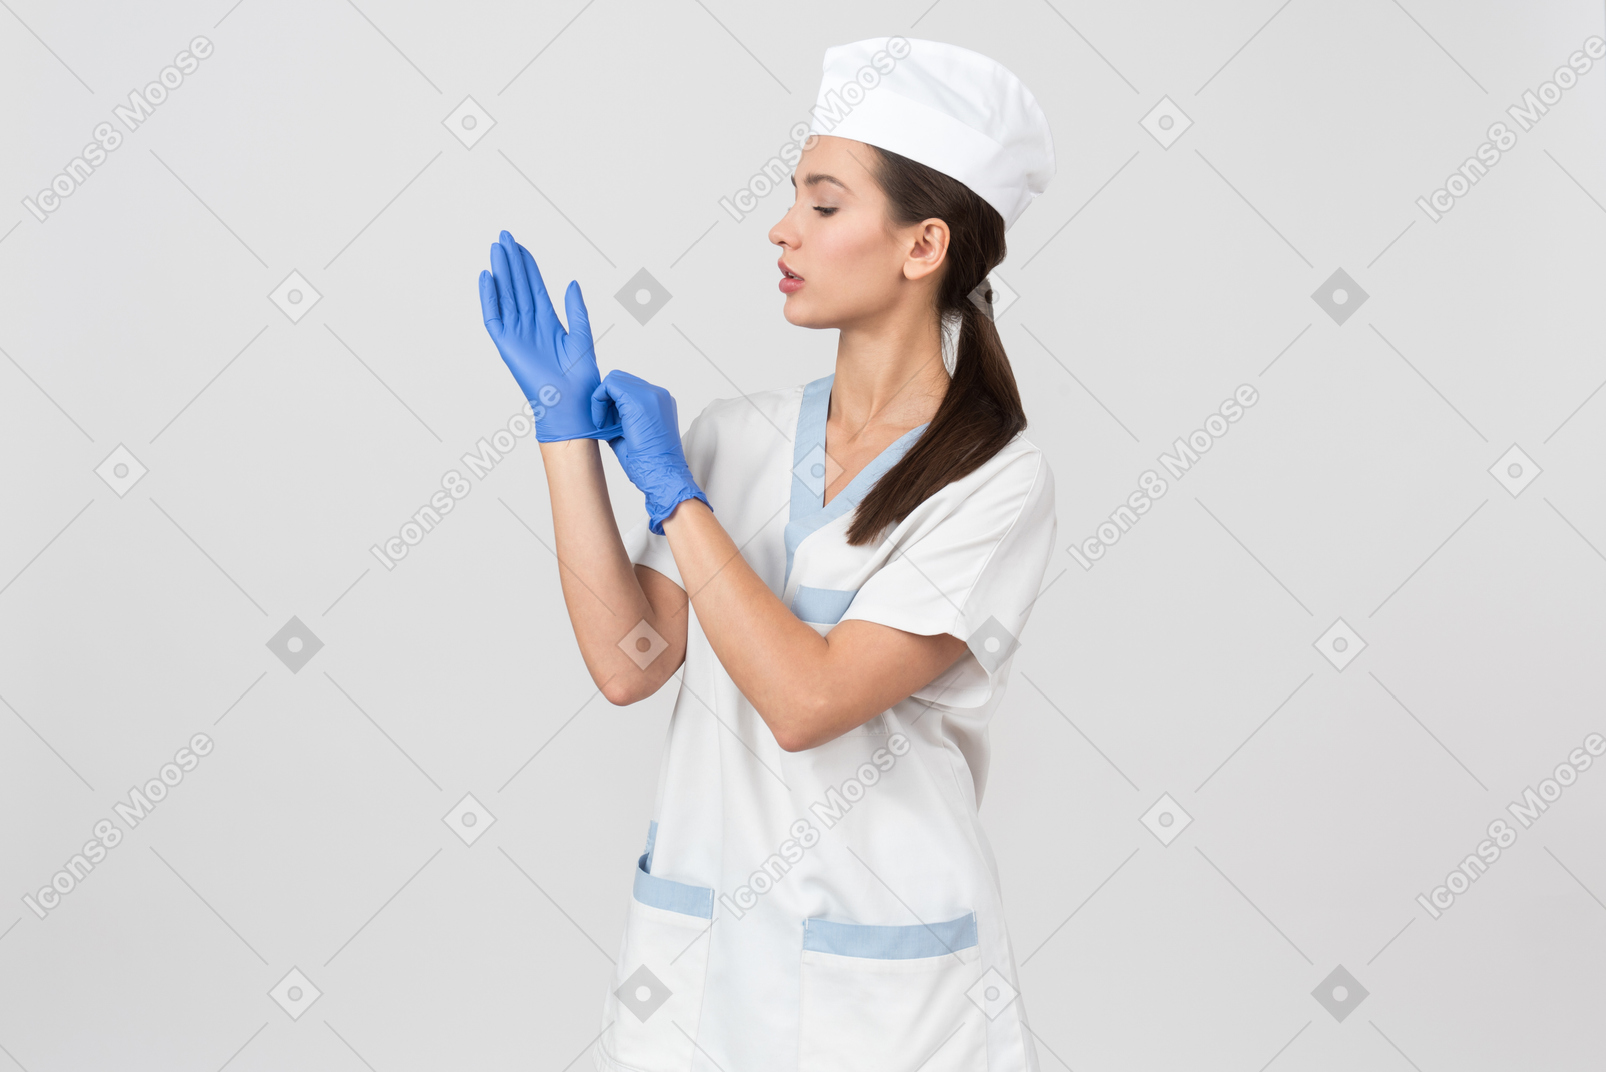 Infirmière attrayante dans une robe médicale mettant des gants en latex